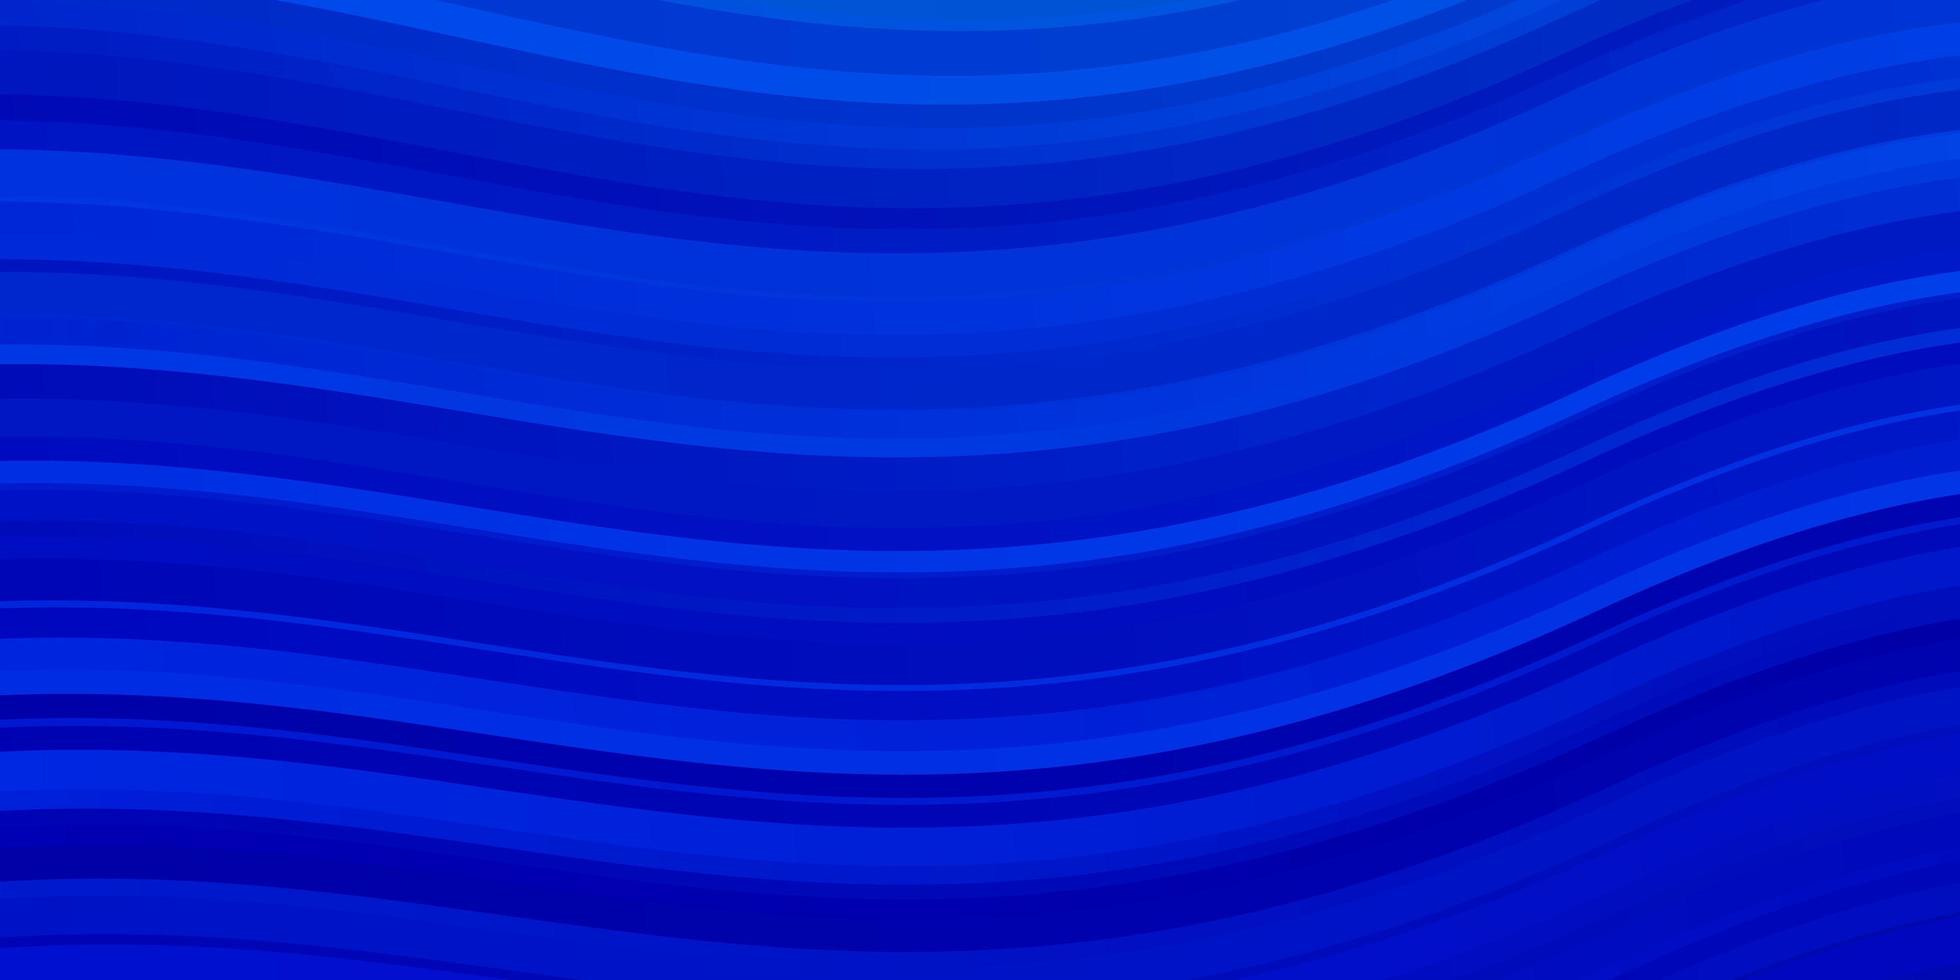 padrão de vetor azul claro com linhas curvas.